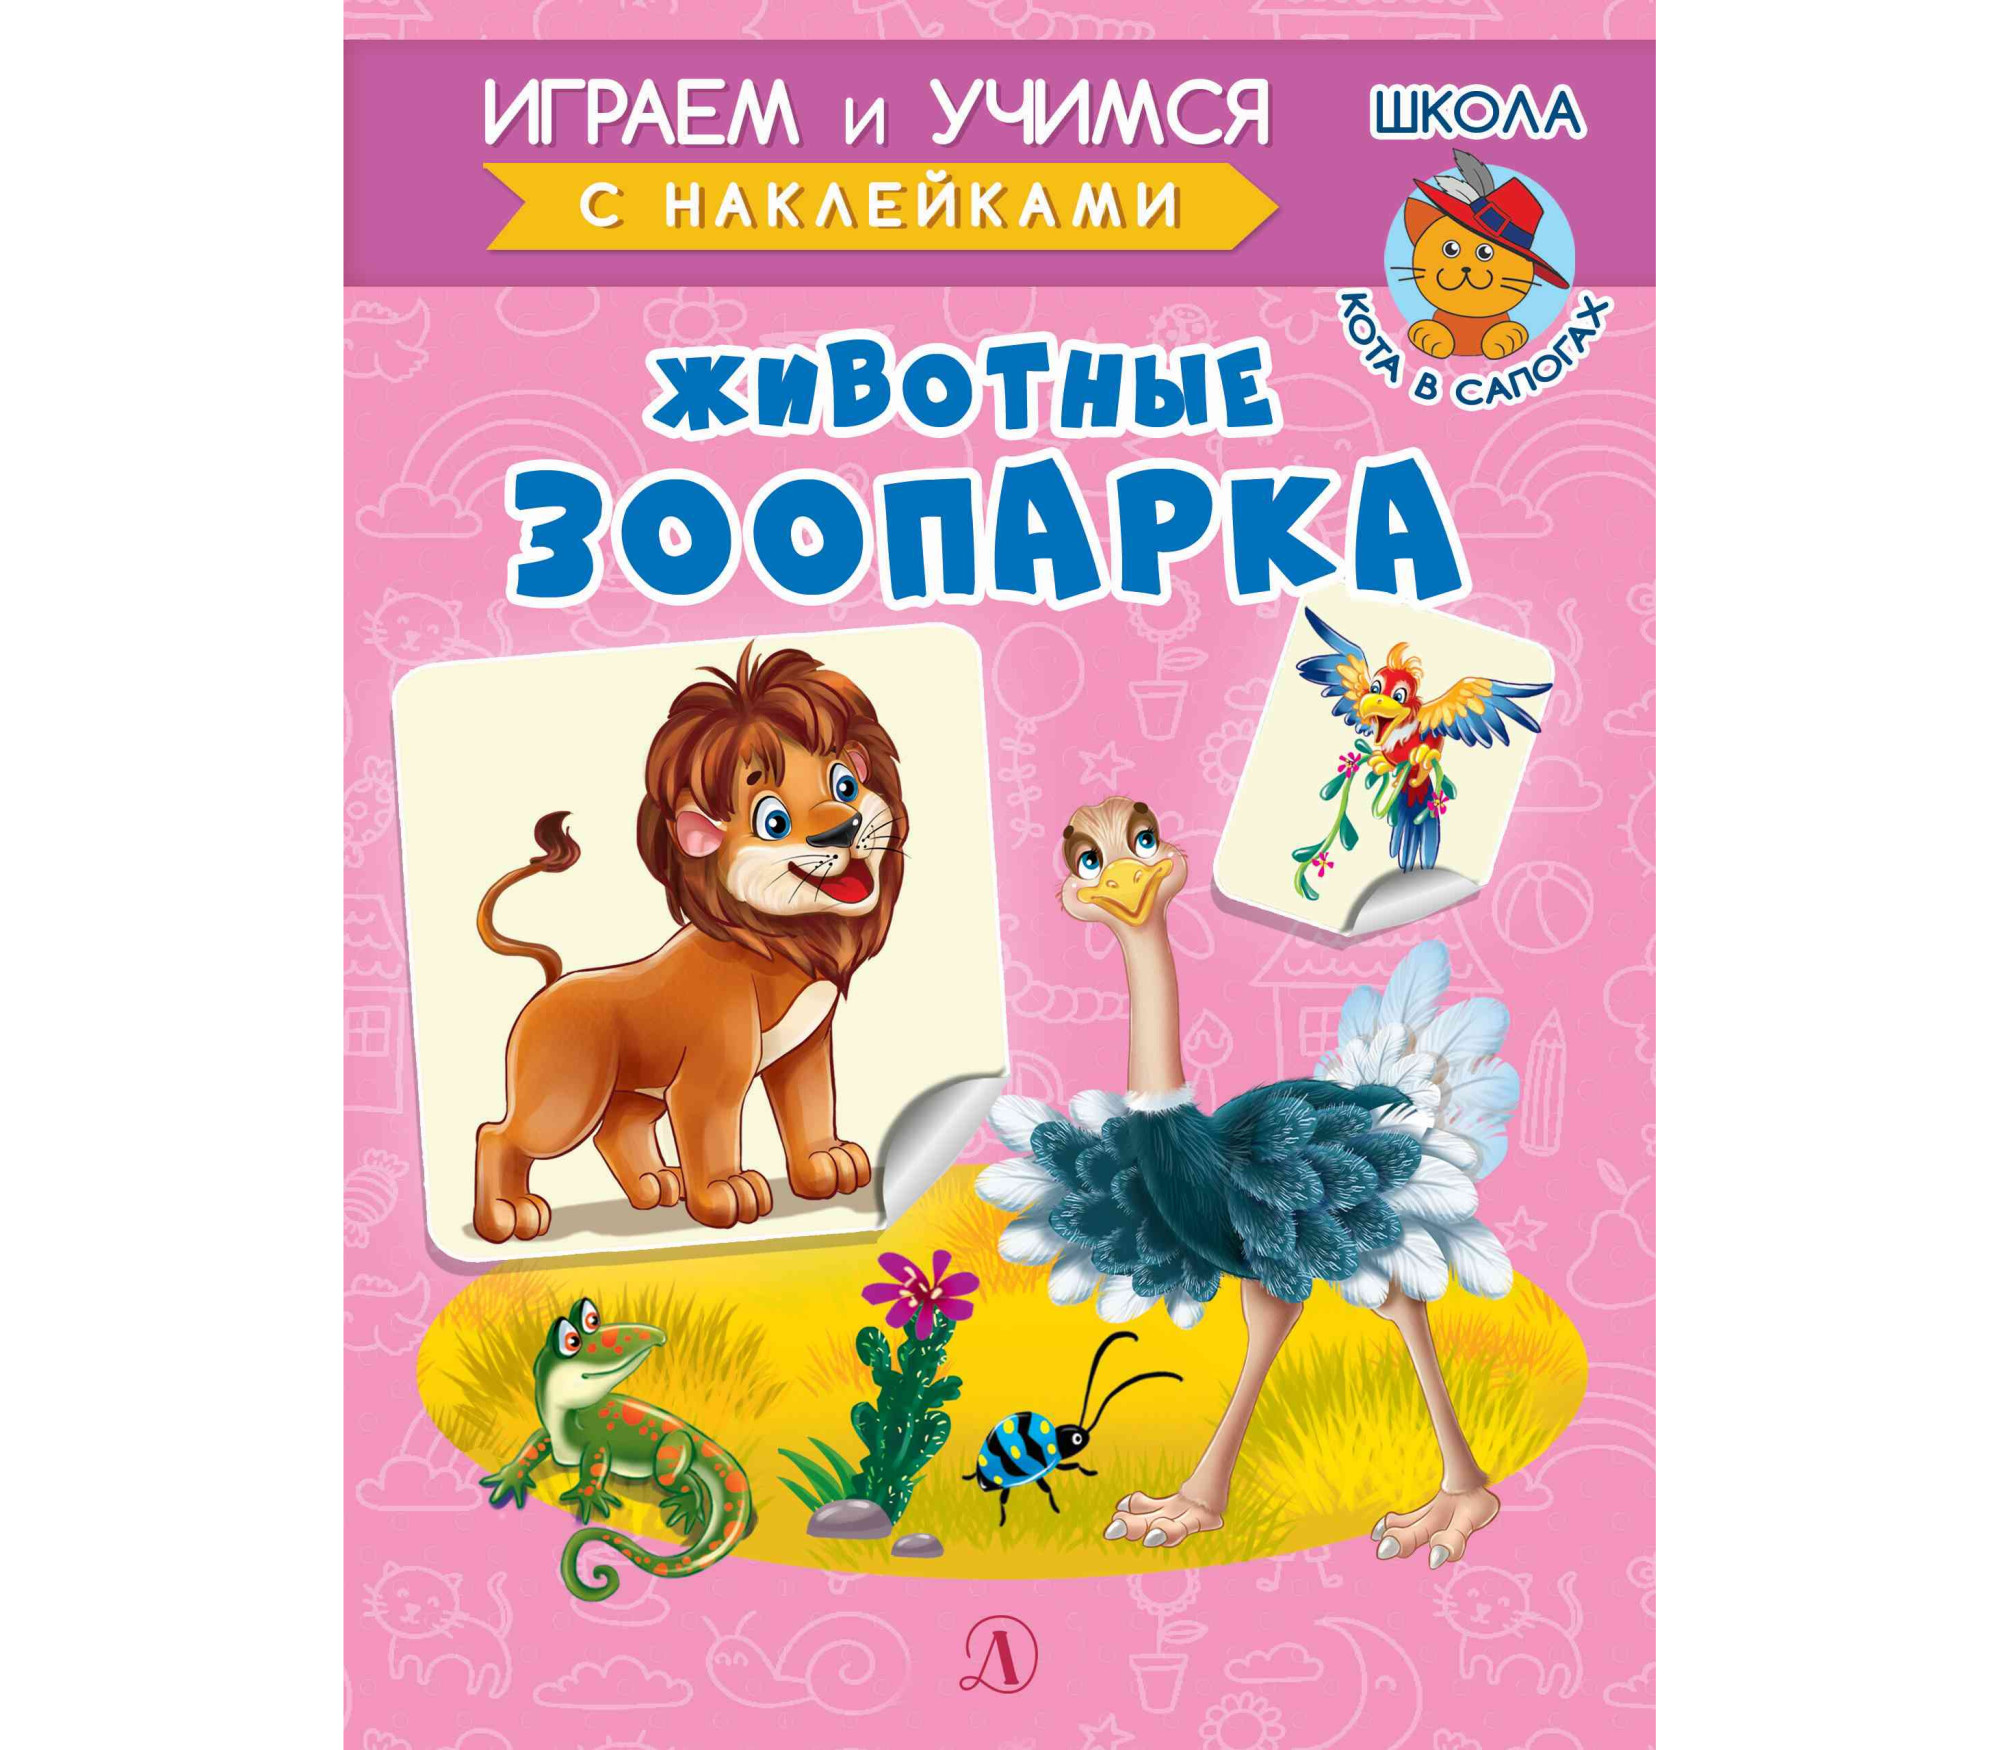 Животыне зоопарка: Книжка с наклейками